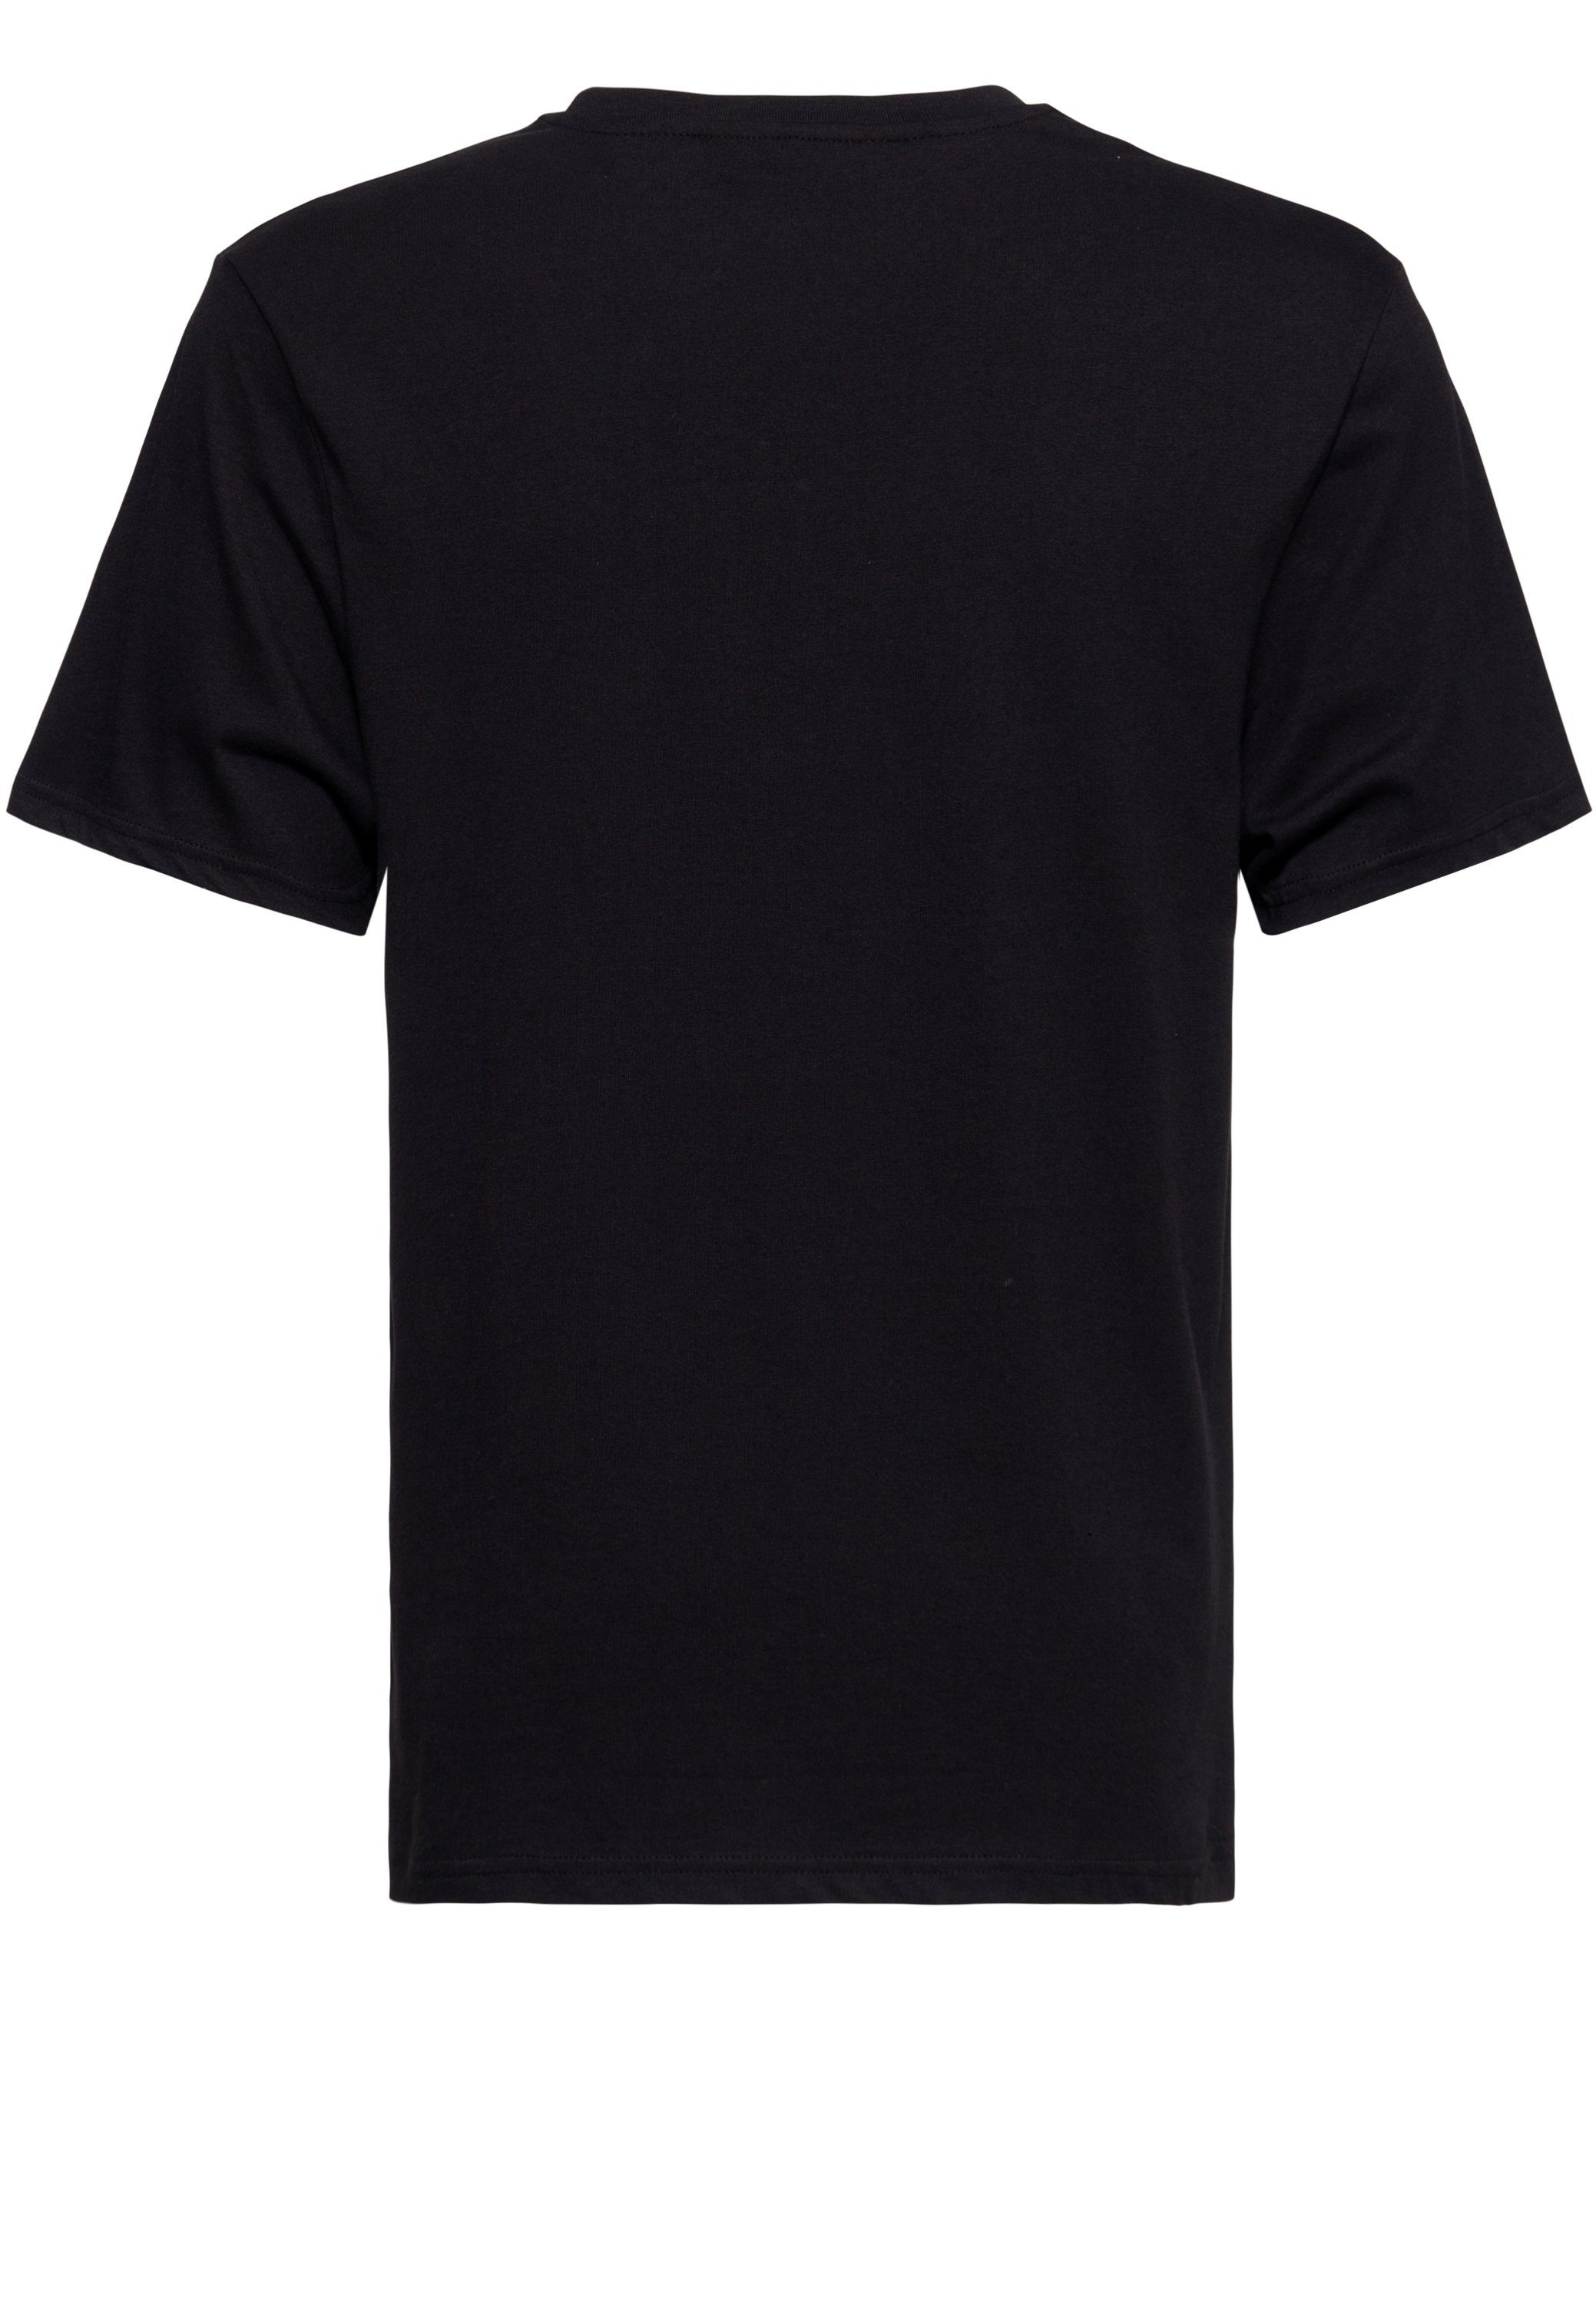 KingKerosin T-Shirt The Man Black In Print Rod Hot mit